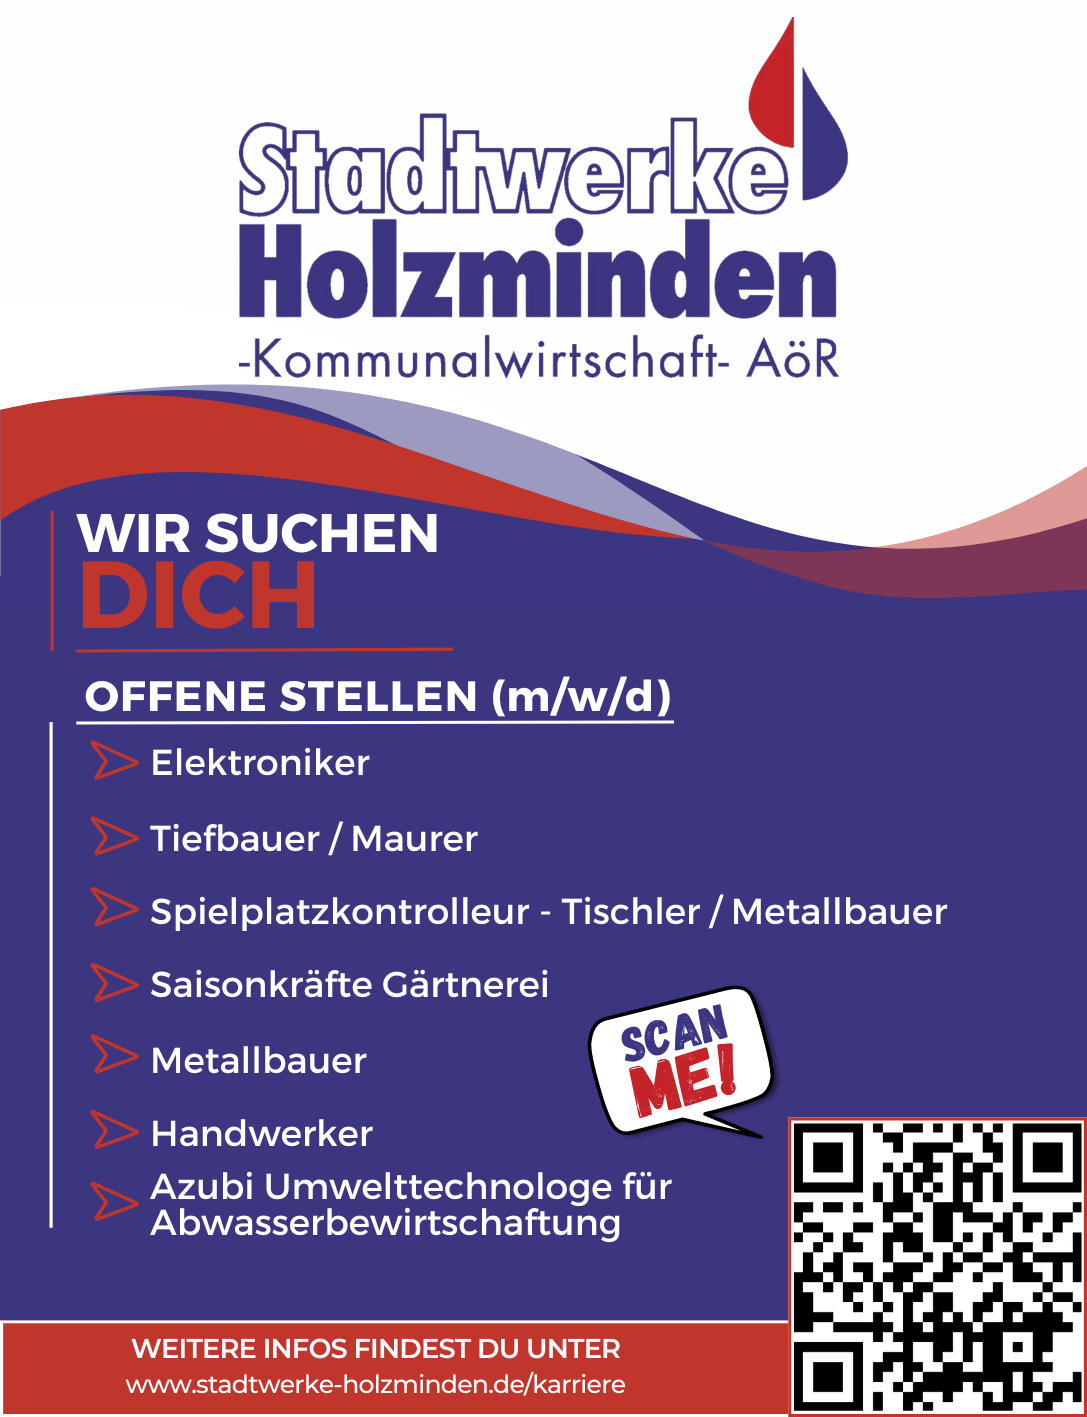 Wir suchen dich! - Stadtwerke Holzminden GmbH